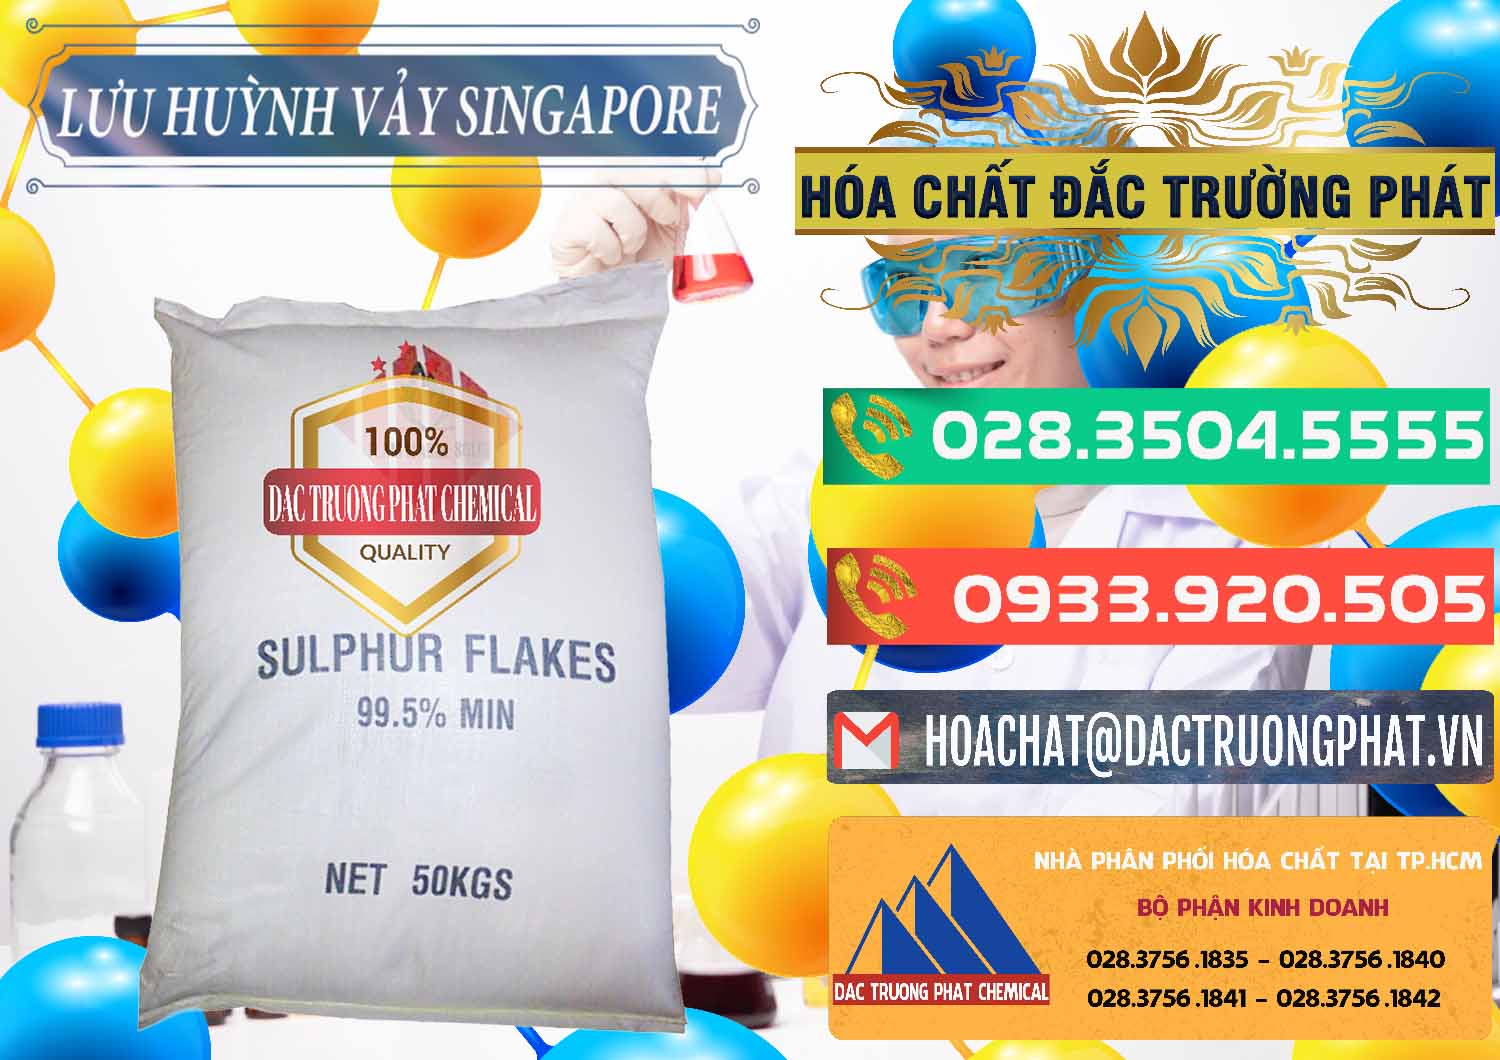 Cty chuyên bán & phân phối Lưu huỳnh Vảy - Sulfur Flakes Singapore - 0346 - Nơi bán _ cung cấp hóa chất tại TP.HCM - congtyhoachat.com.vn